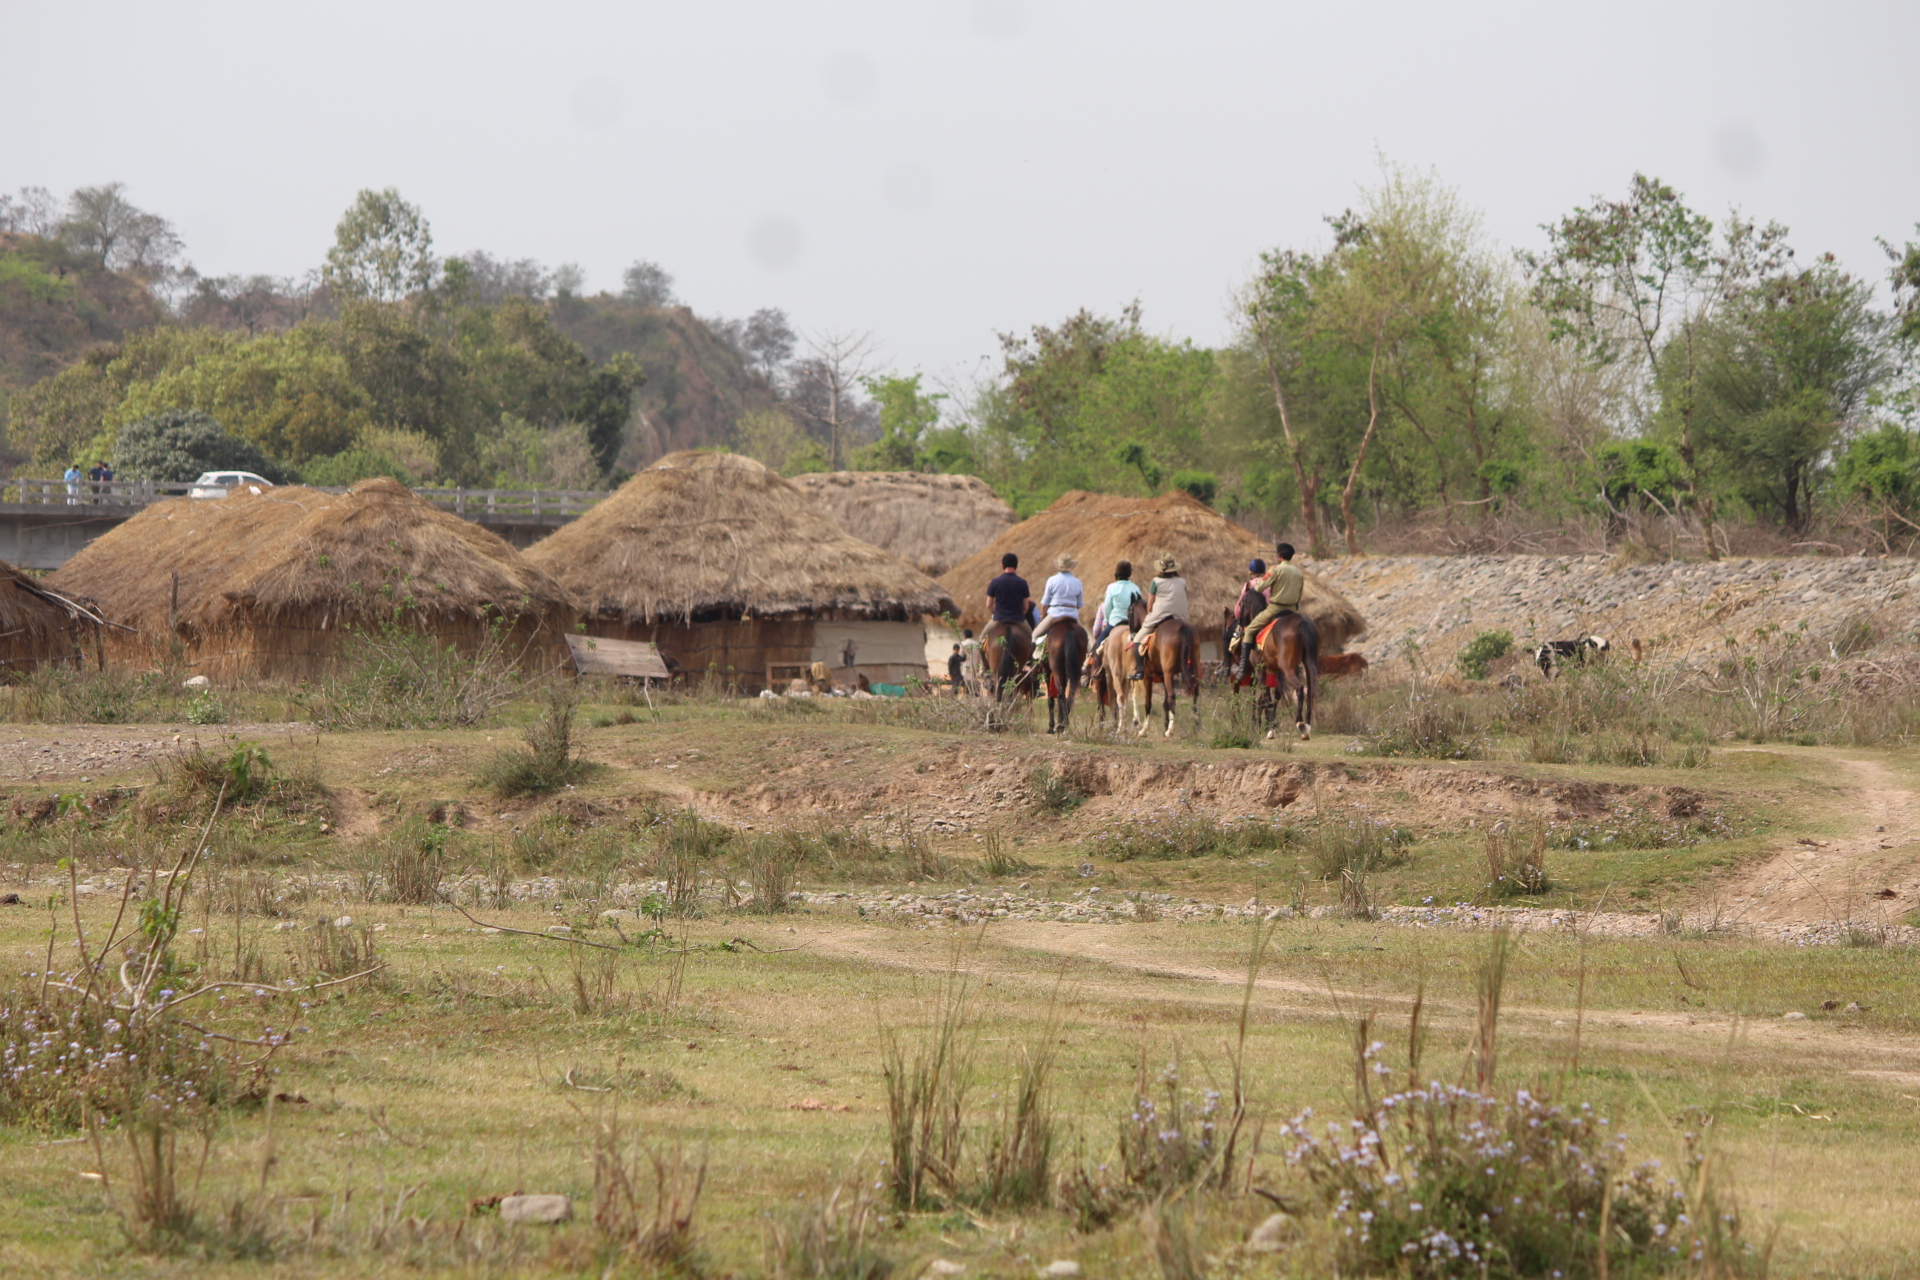 Paardrijden in India - Vakantie te paard / Reisbureau Perlan